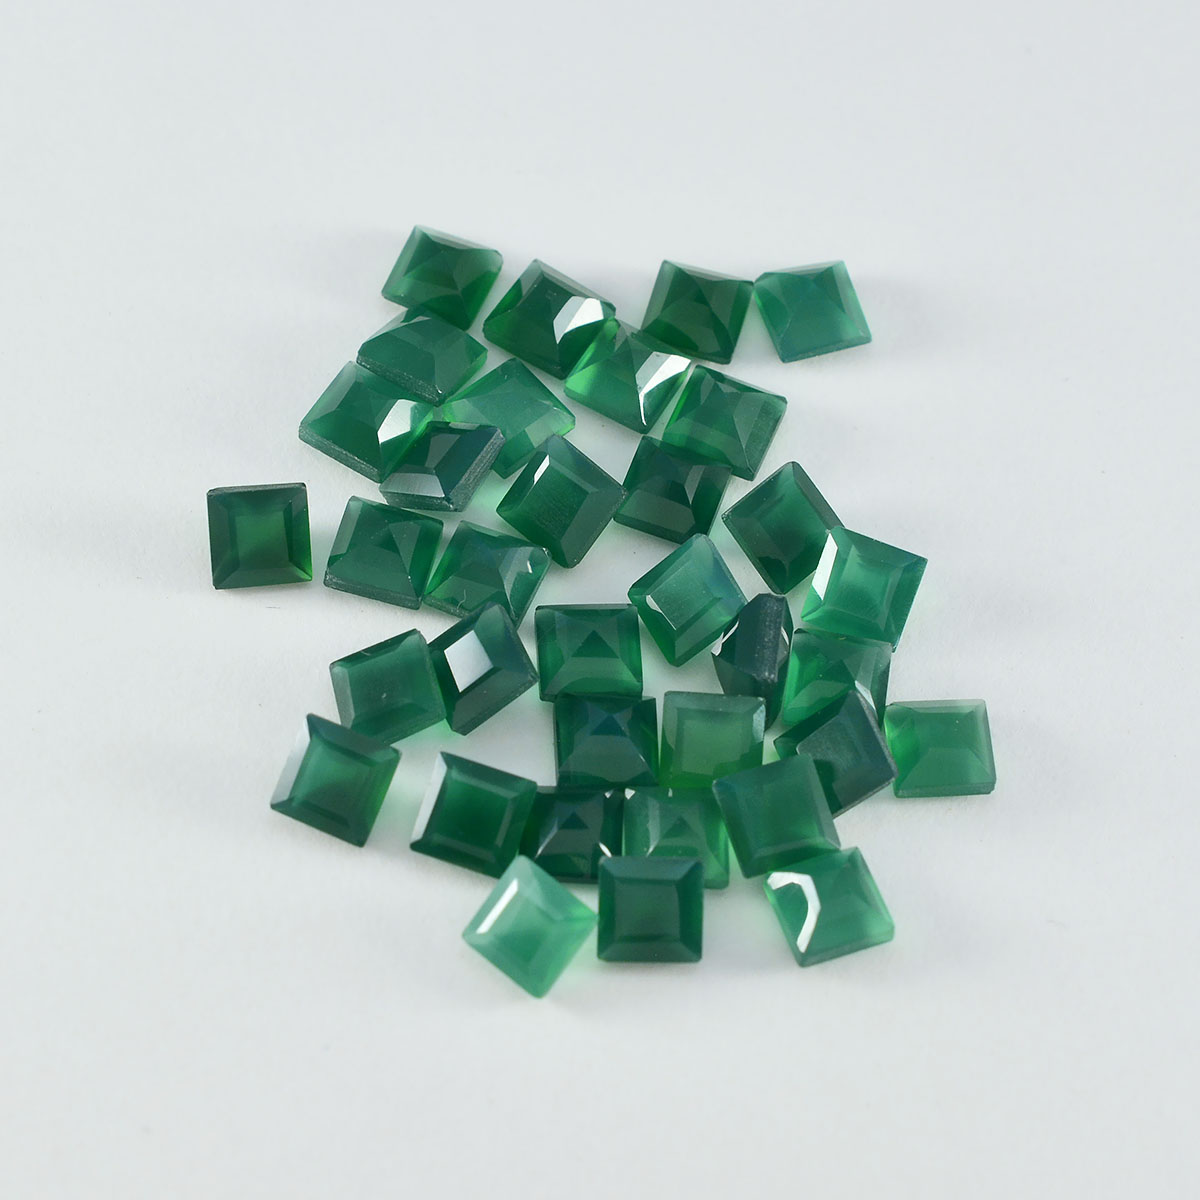 Riyogems 1pc véritable onyx vert à facettes 5x5mm forme carrée belle qualité pierre précieuse en vrac